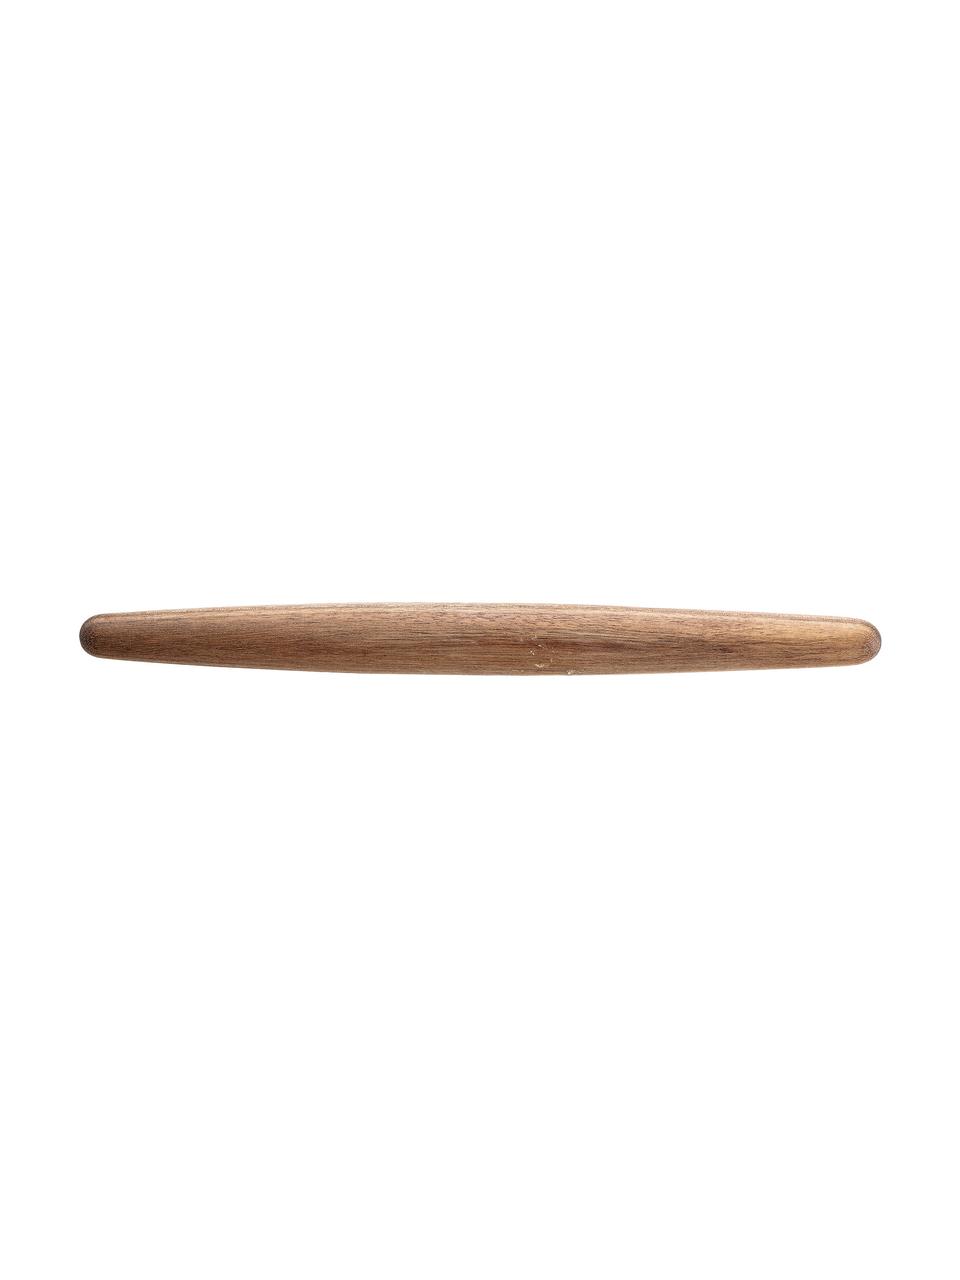 Váleček z akátového dřeva Alicja, Akátové dřevo, Akátové dřevo, D 33 cm